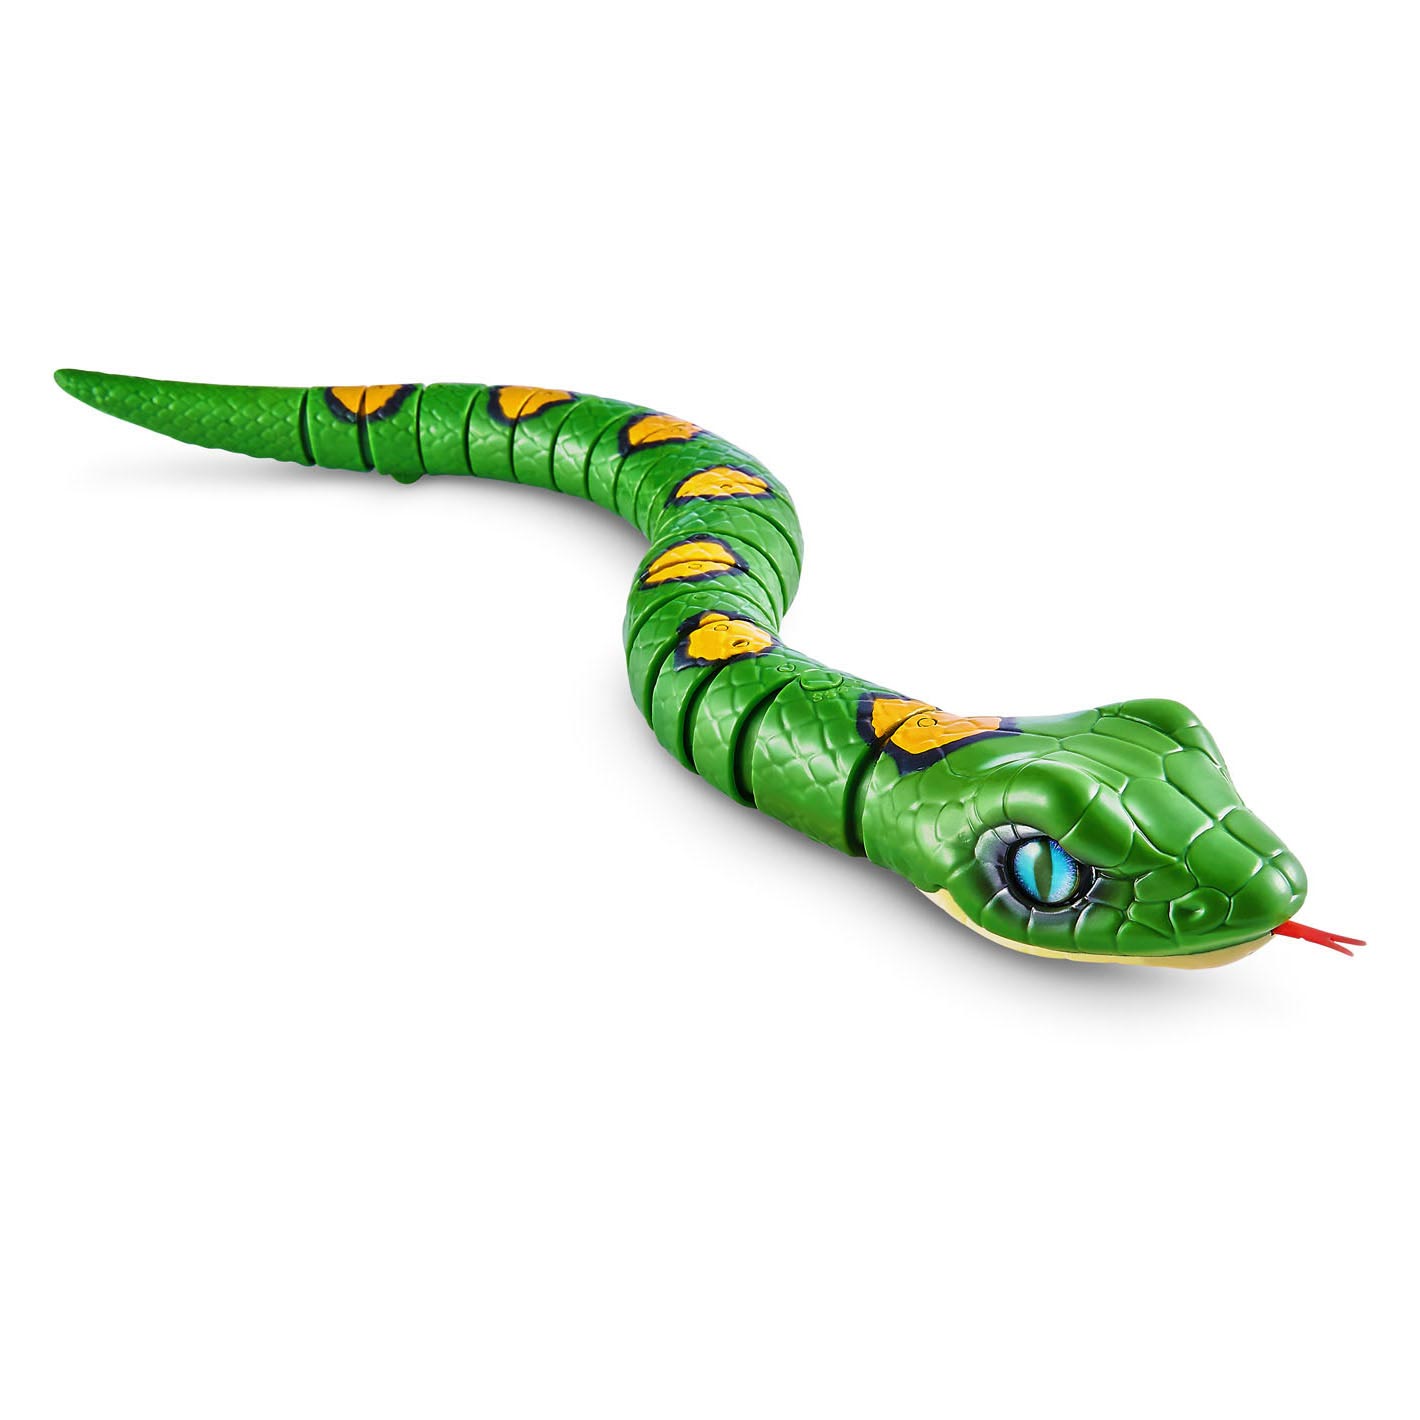 Serpent robotique ZURU Robo Alive - Vert